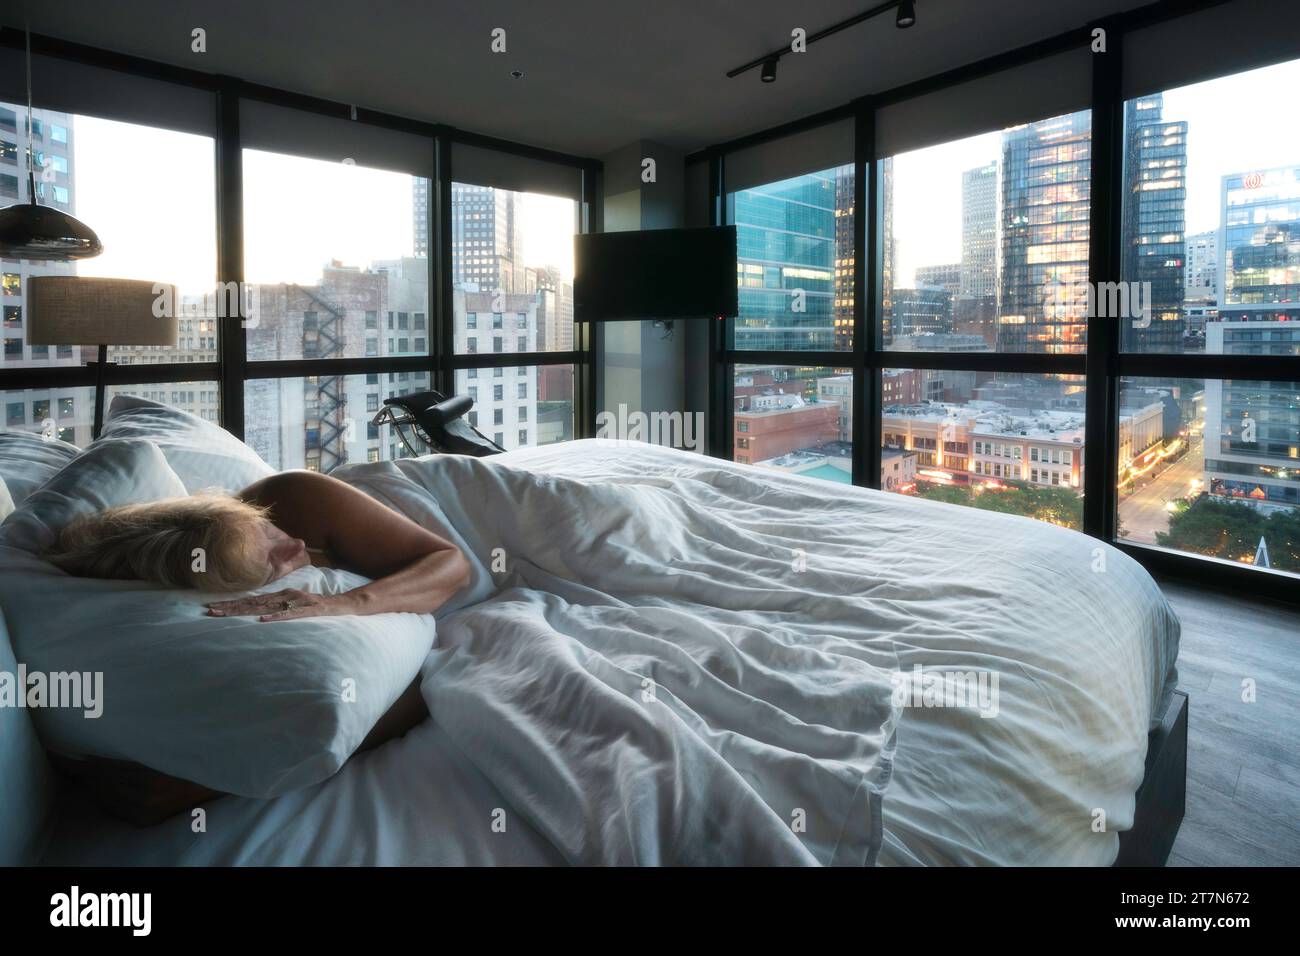 Pittsburgh, Pennsylvanie, États-Unis une femme se réveille avec des vues sur les gratte-ciel du centre-ville vus à travers les fenêtres d'une chambre contemporaine Banque D'Images